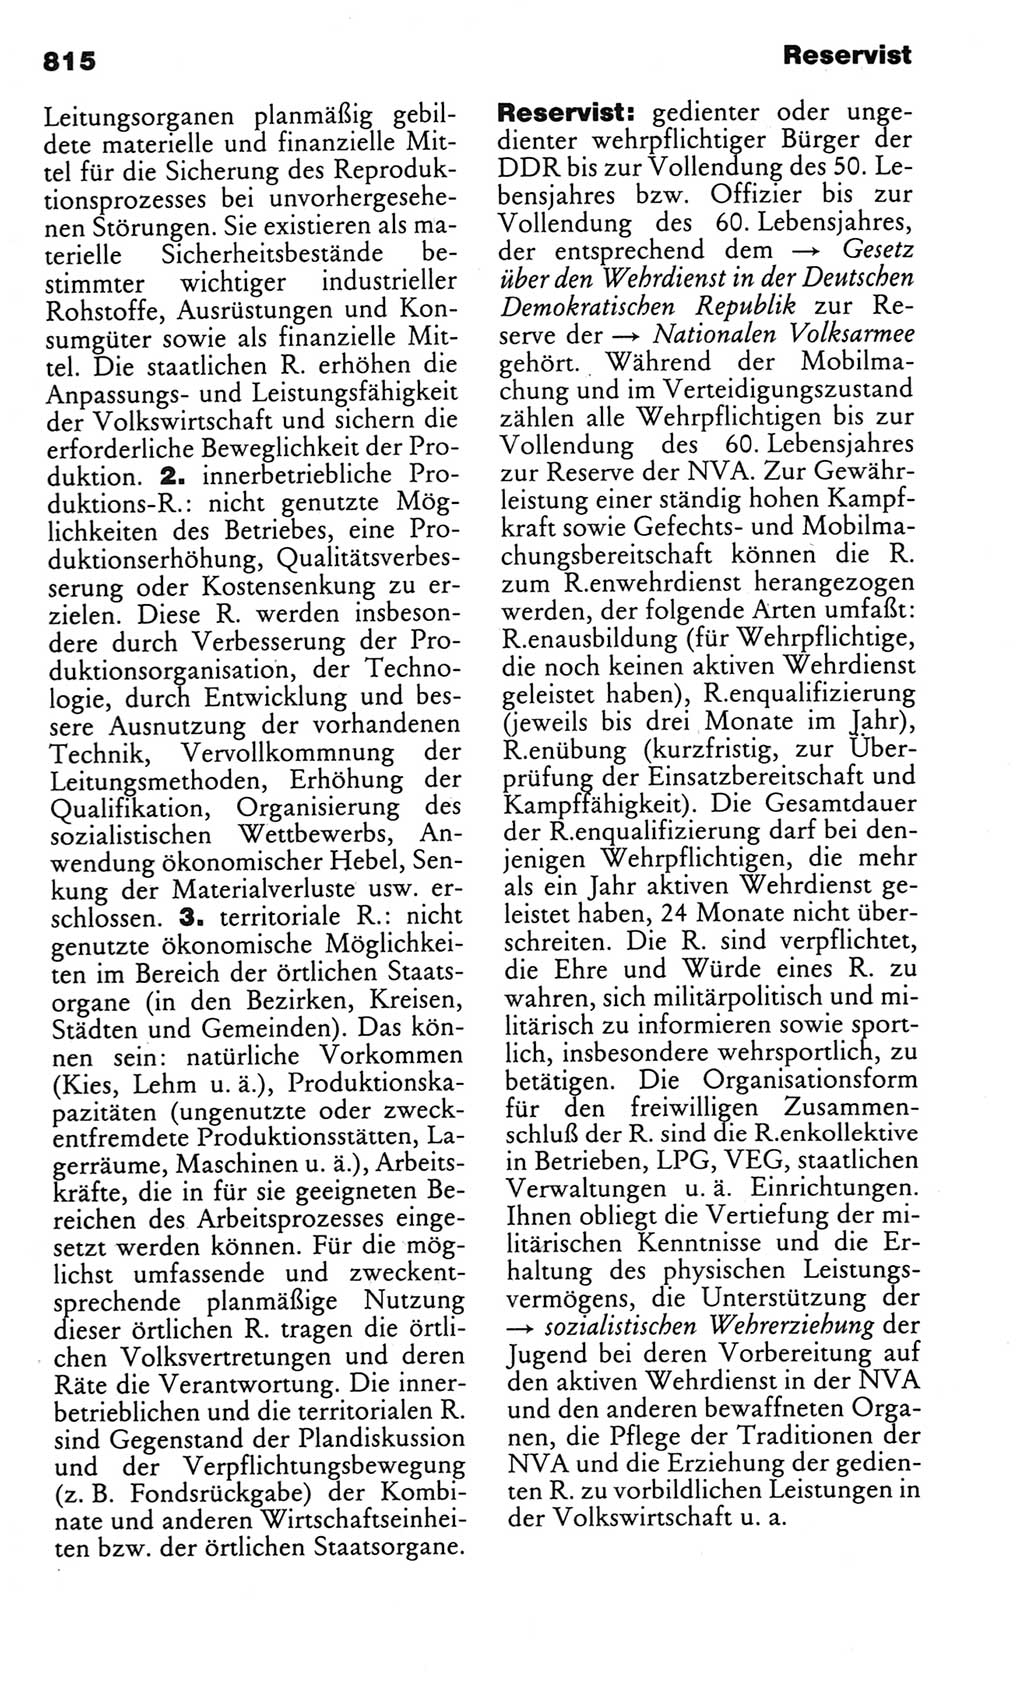 Kleines politisches Wörterbuch [Deutsche Demokratische Republik (DDR)] 1983, Seite 815 (Kl. pol. Wb. DDR 1983, S. 815)